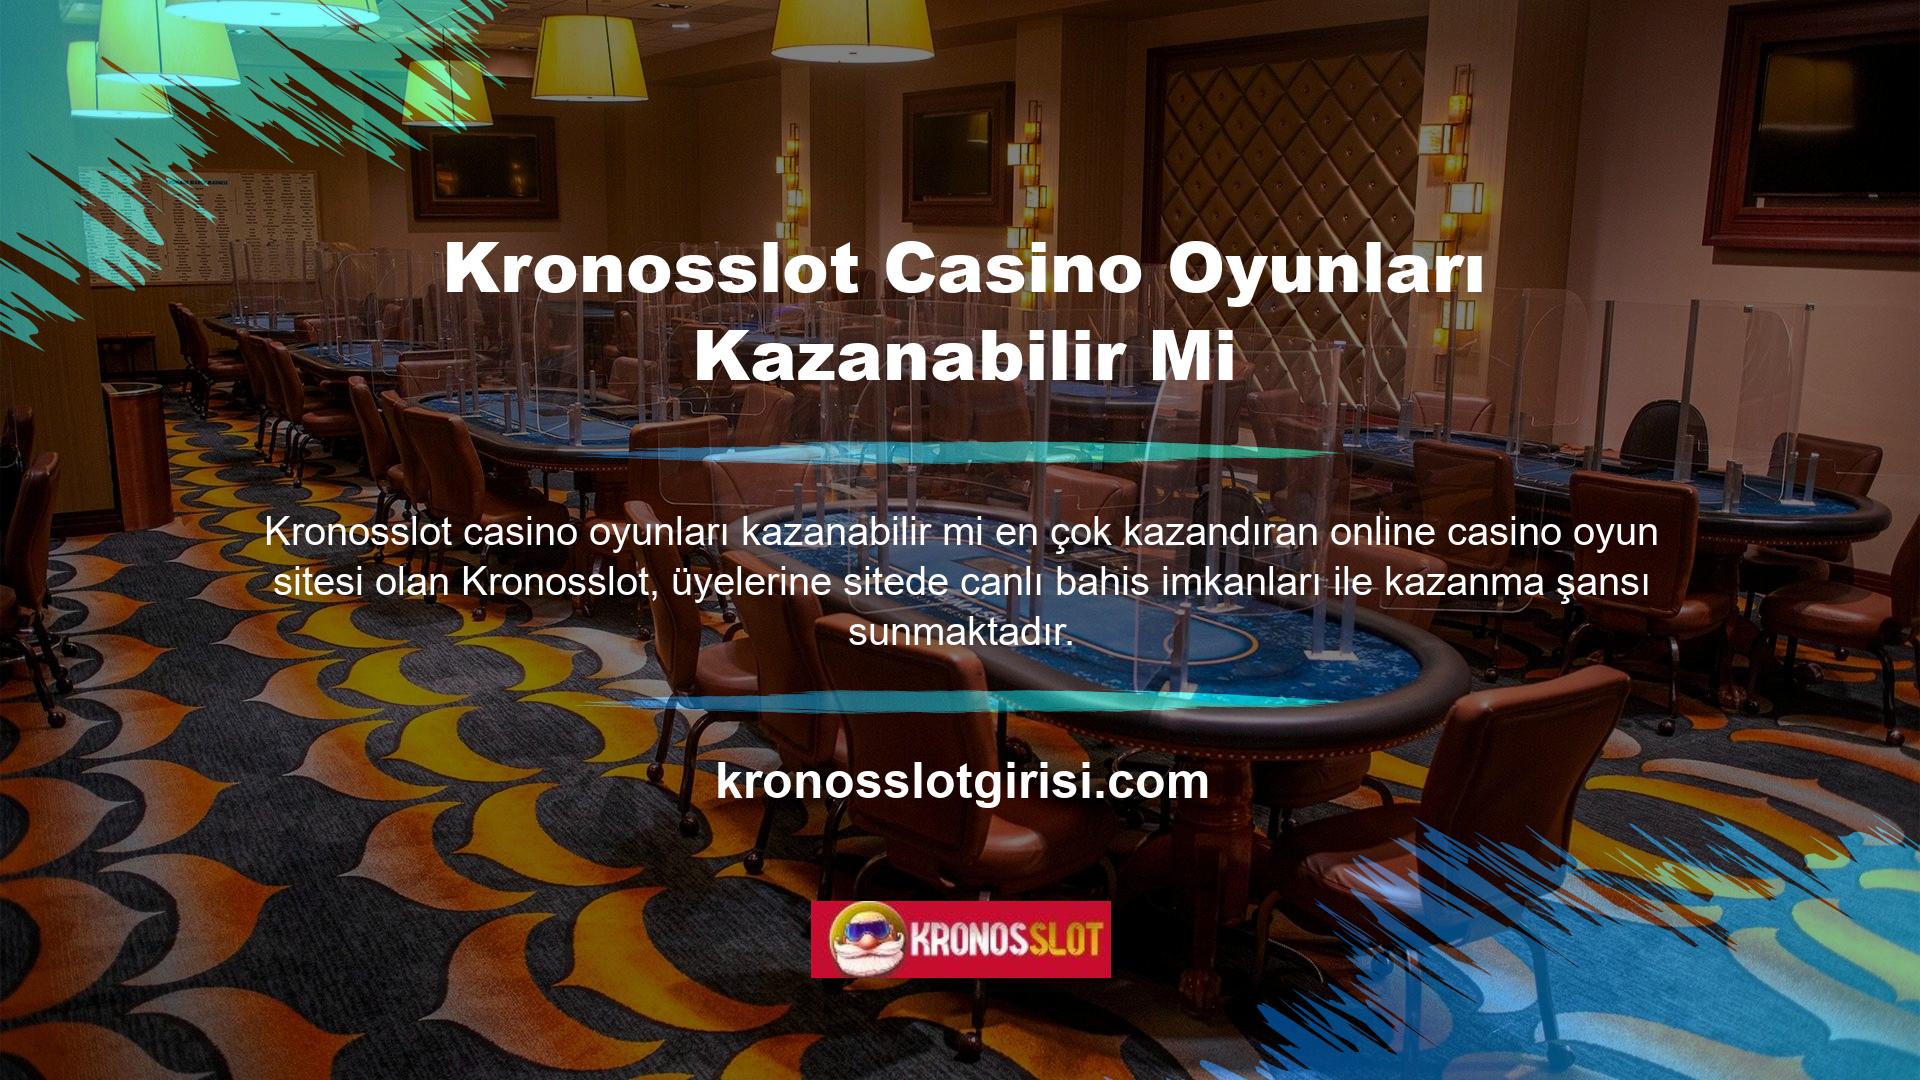 Kronosslot canlı bahis casino oyununun aşağıdaki özellikleri, kullanıcıların üye sayısına göre hesaplarına para aktararak daha hızlı kazanmalarını sağlar